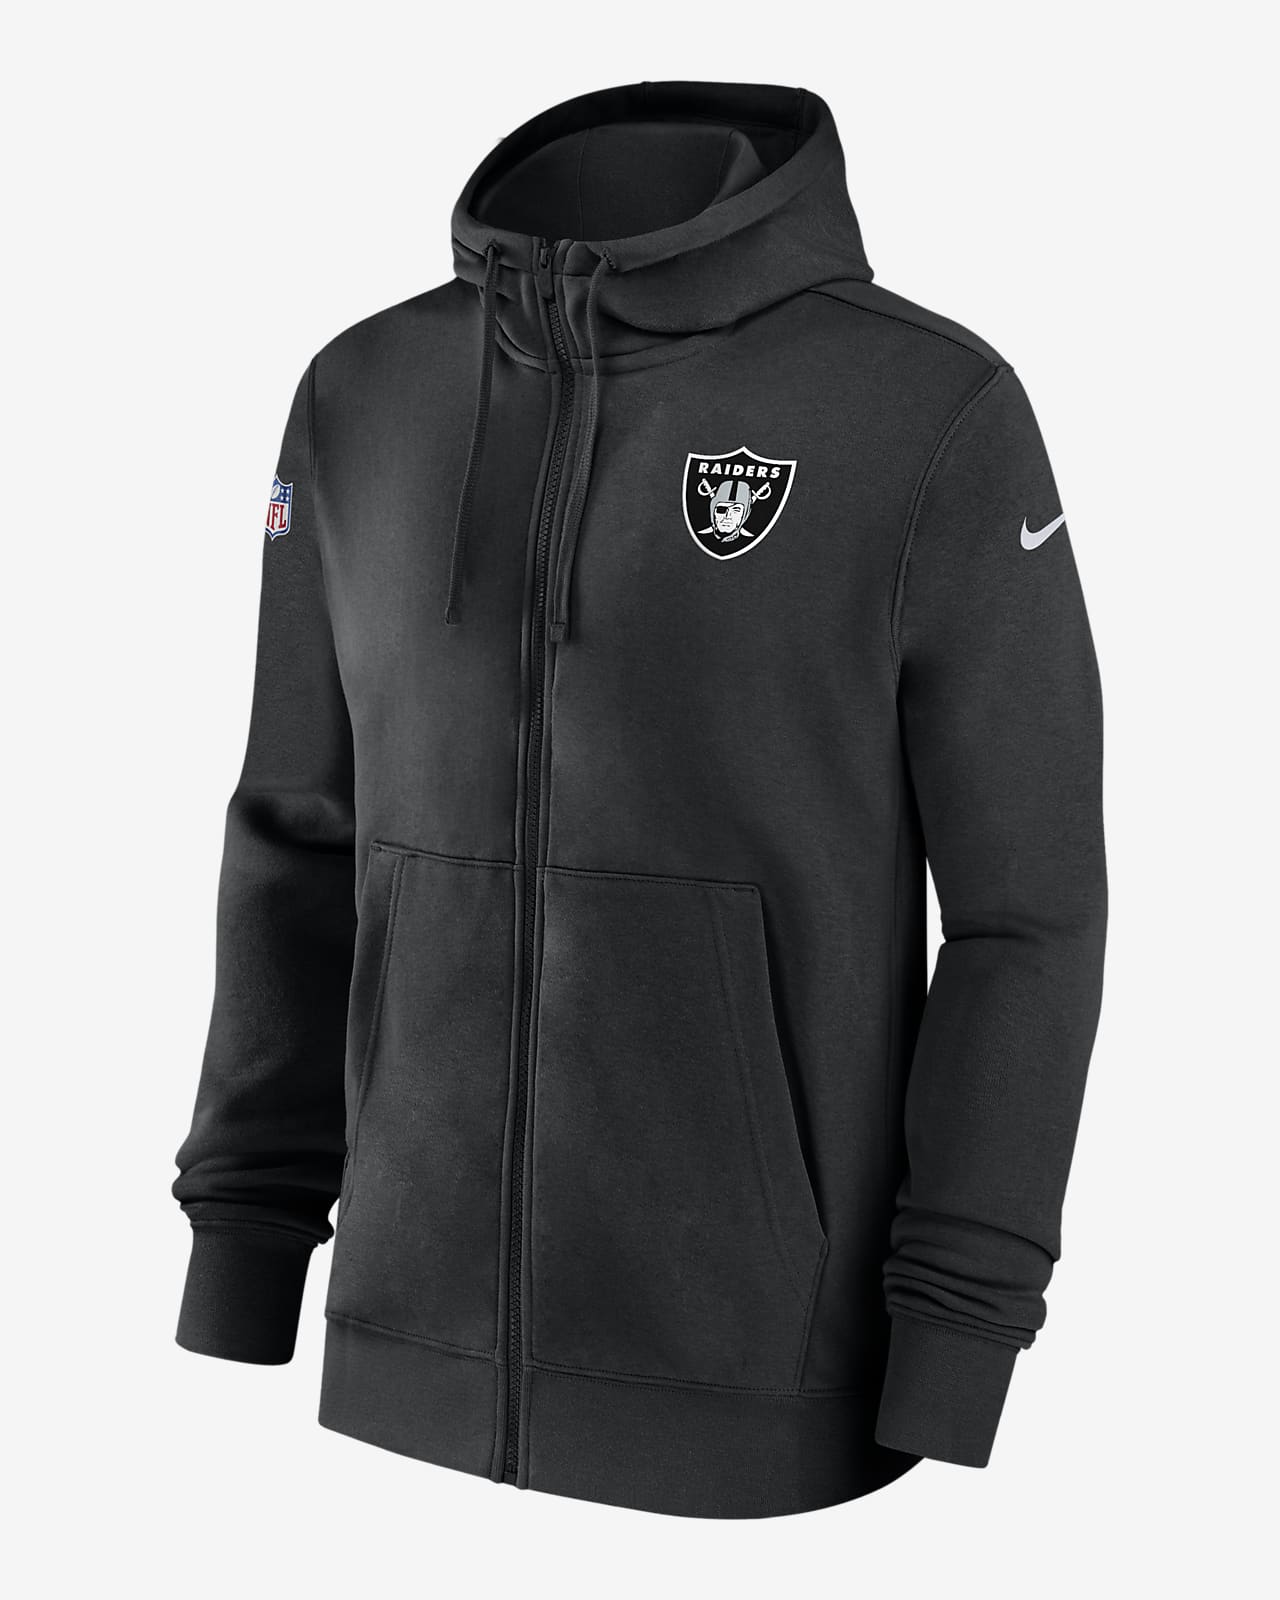 Las Vegas Raiders Sideline Club Men's Nike NFL Full-Zip Hoodie.